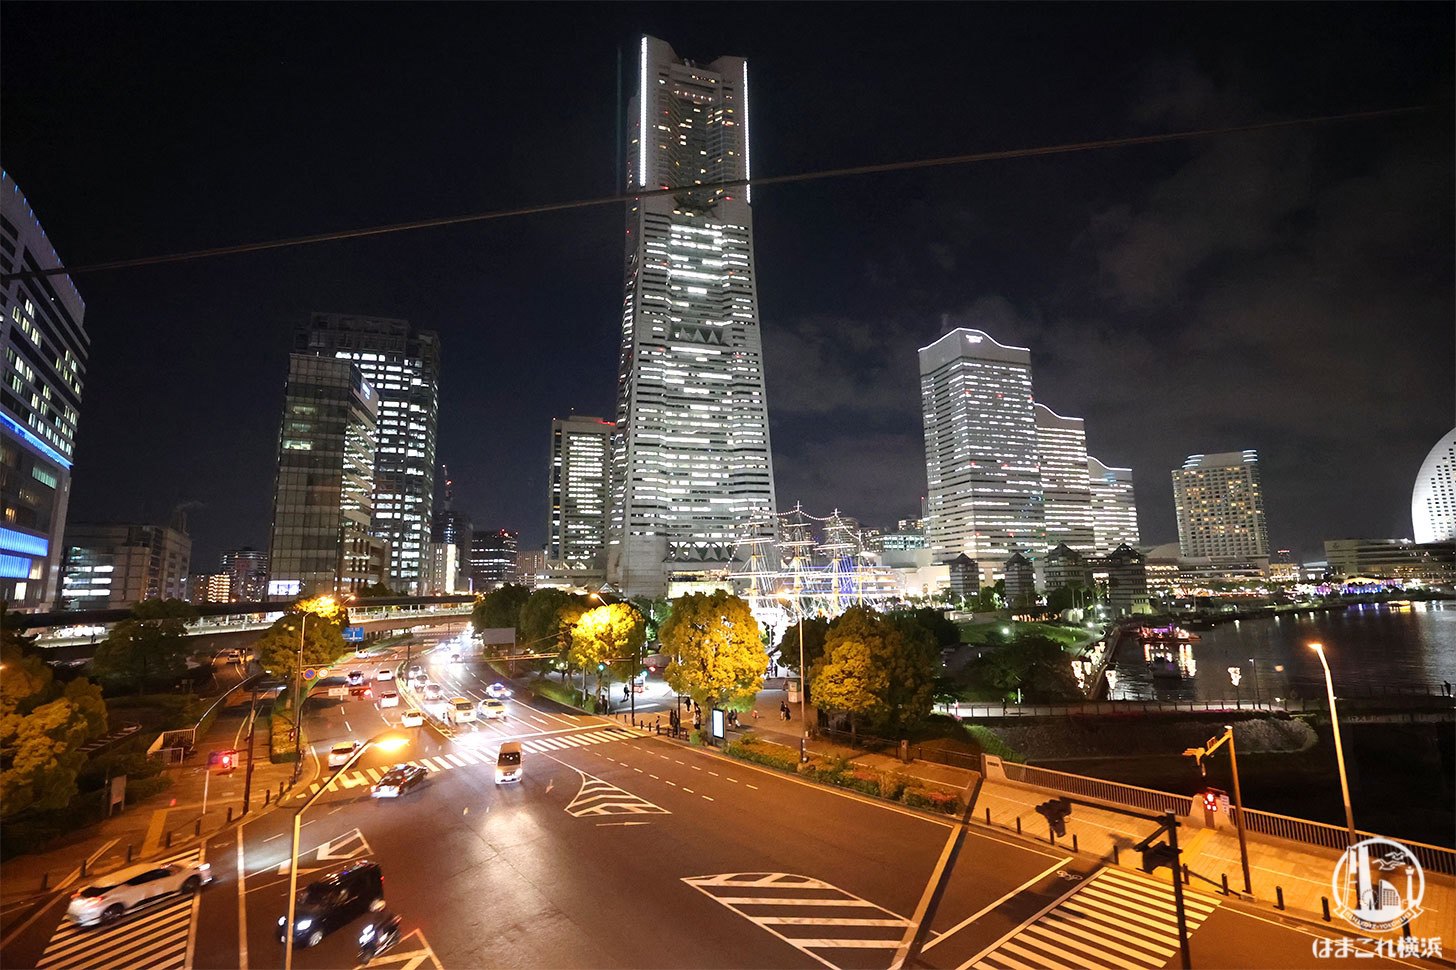 ゴンドラから見た横浜ランドマークタワーとビル群